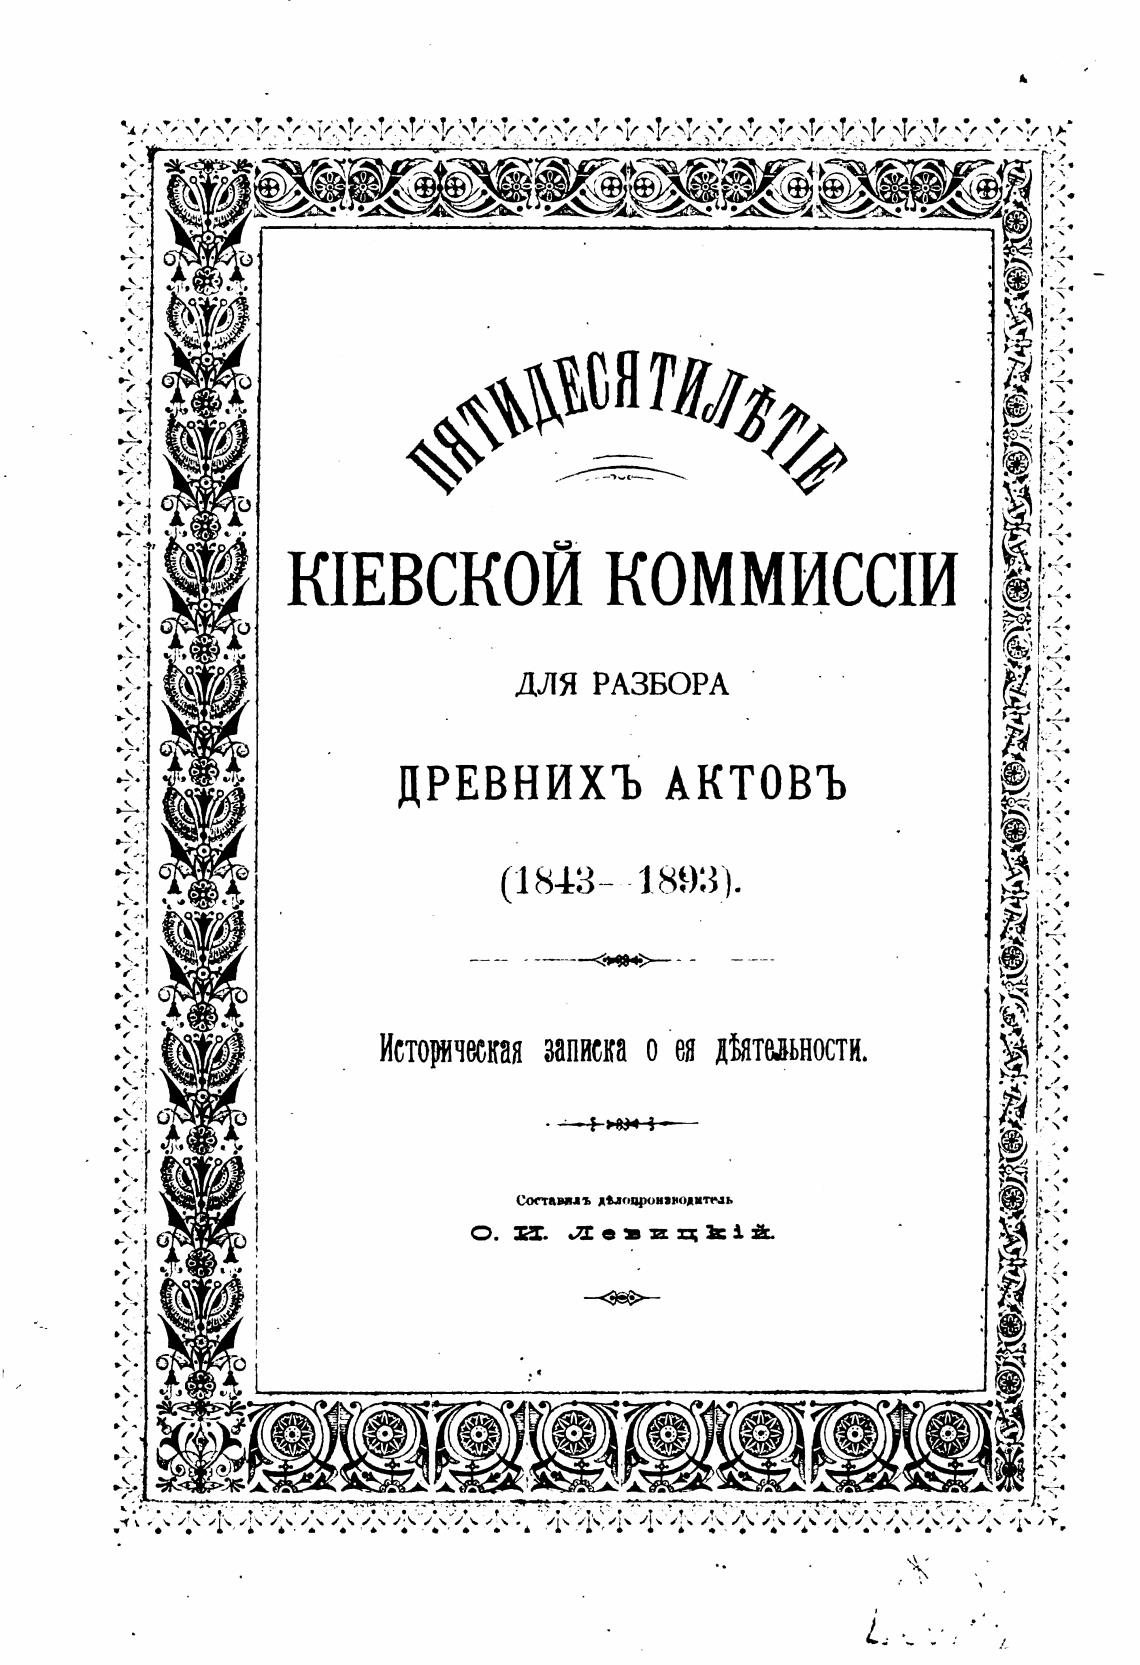 Древности разбор 2. Книга пятидесятилетие Киевской комиссии для разбора древних актов 1893.